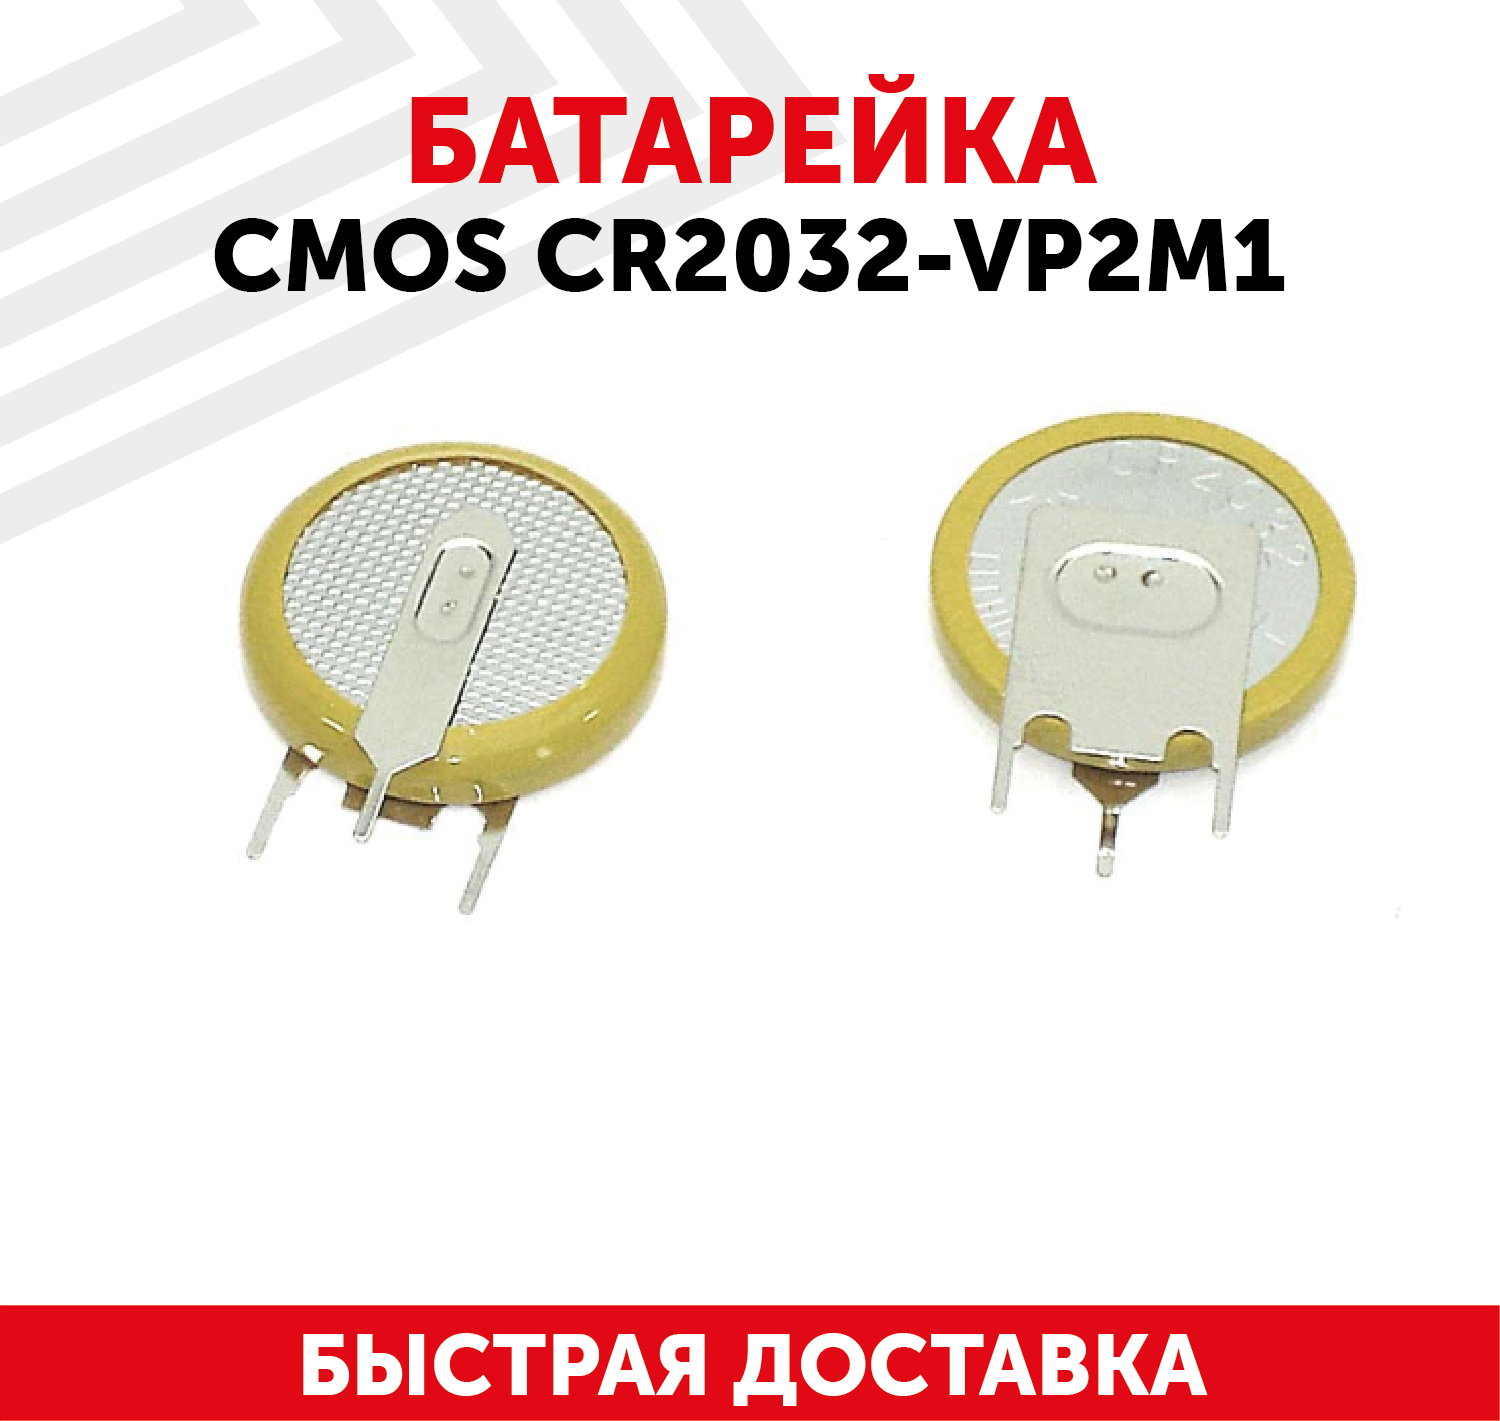 Батарейка (элемент питания, таблетка) CMOS CR2032-VP2M1, 3В, 210мАч, 3 контакта, для игрушек, фонариков